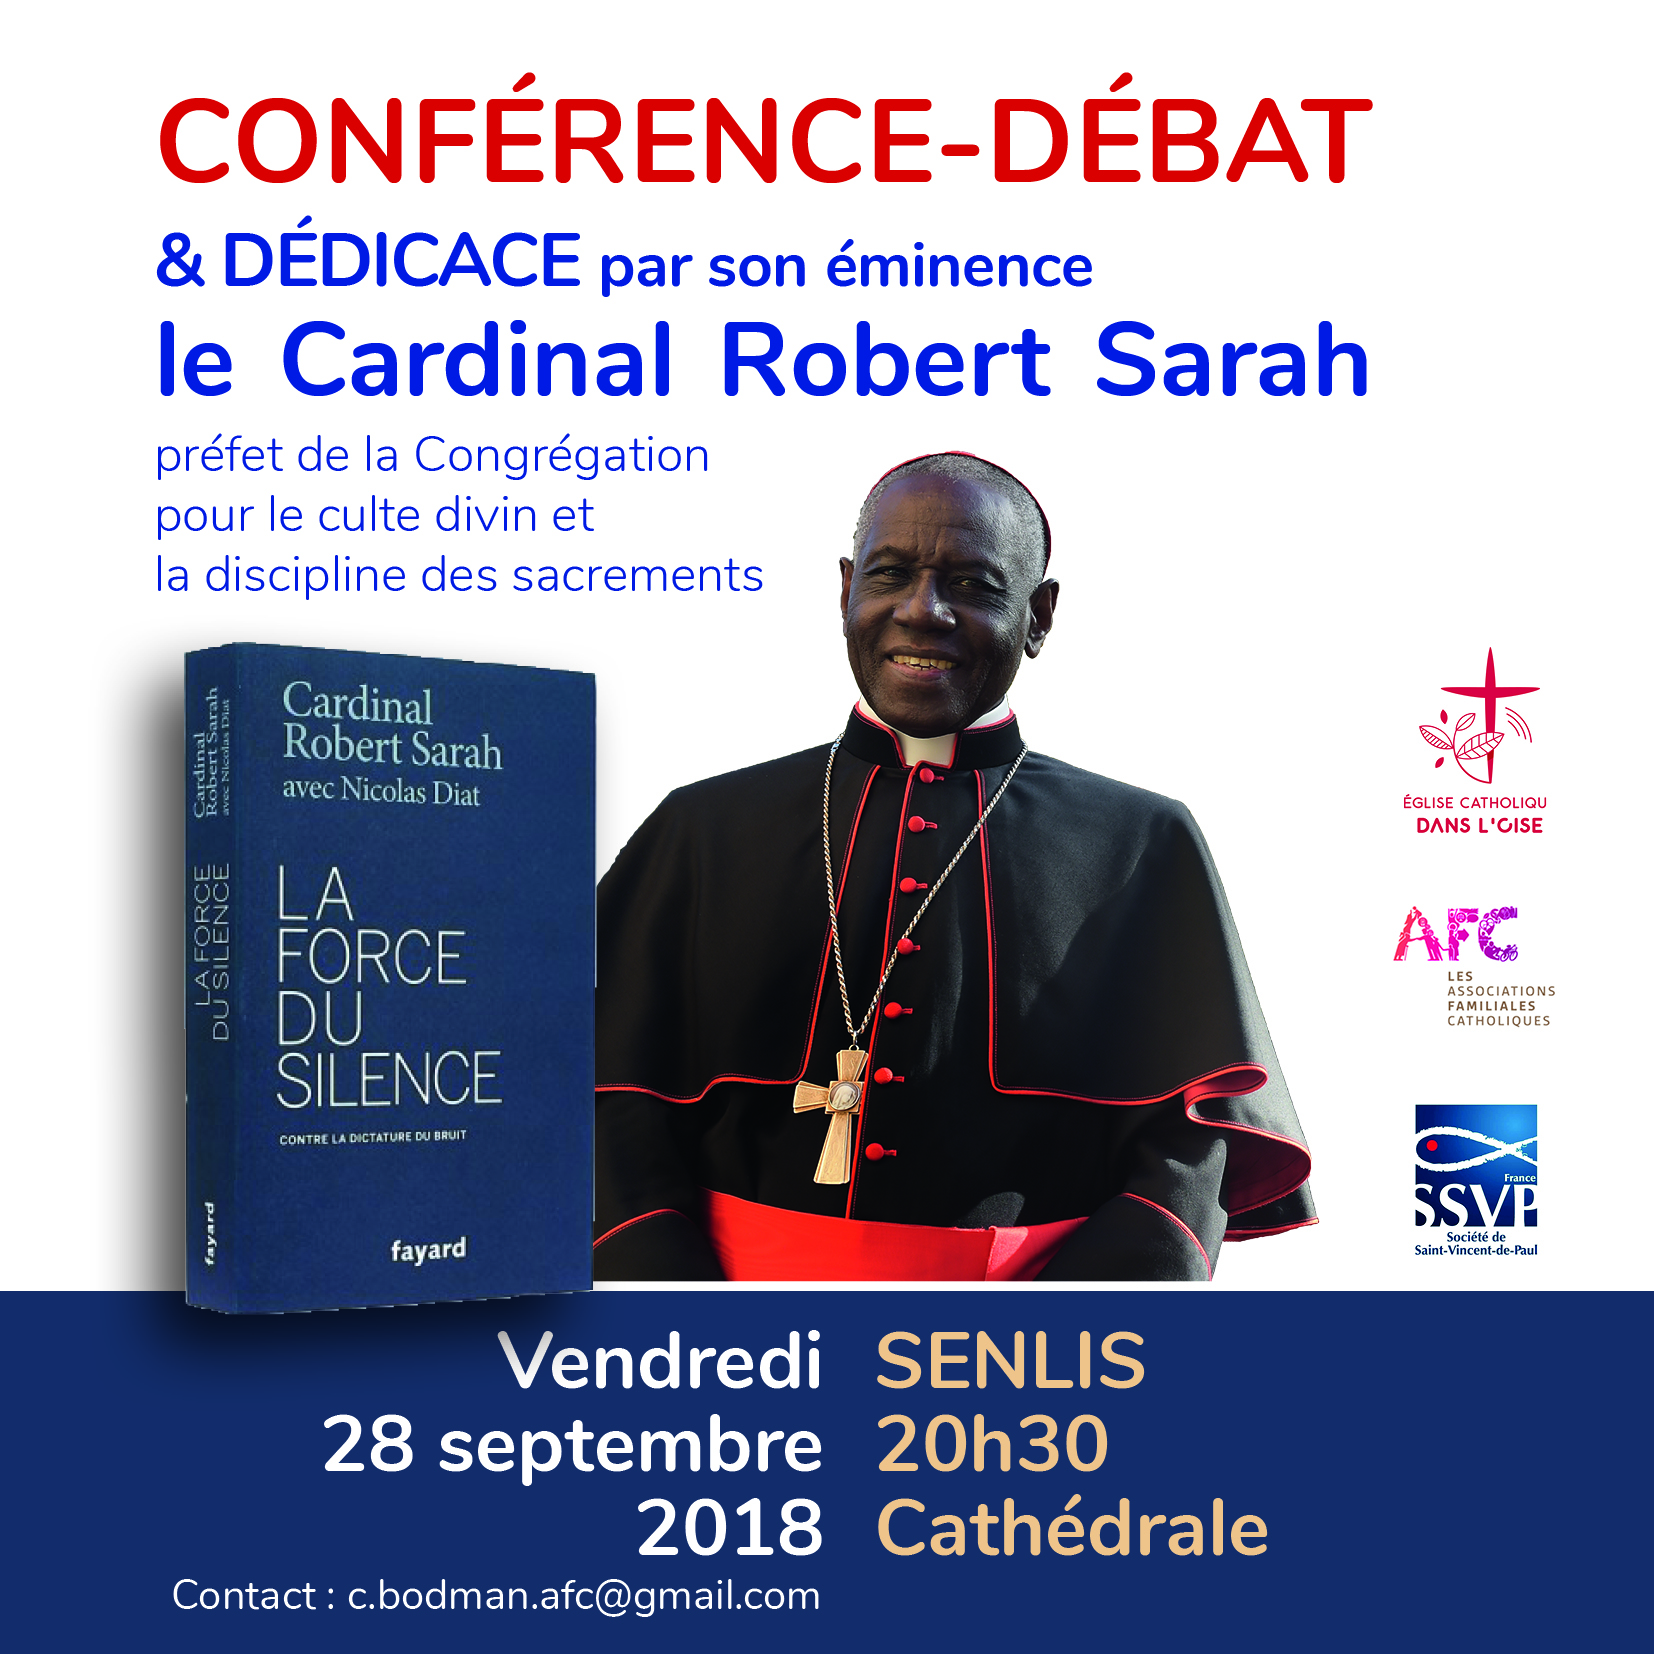 Conférence du cardinal Robert Sarah le 28 septembre 2018 à Senlis (60)